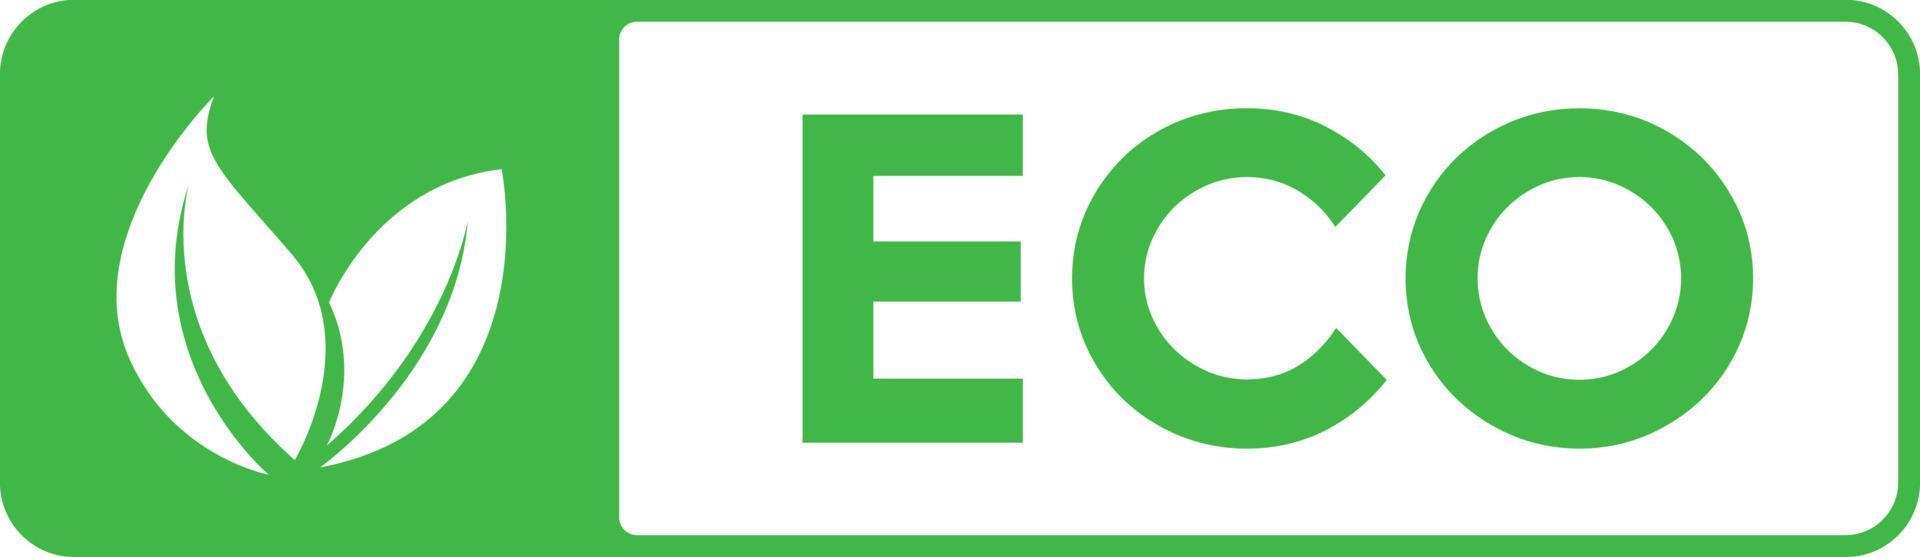 Leaf ecology logo symbol vector